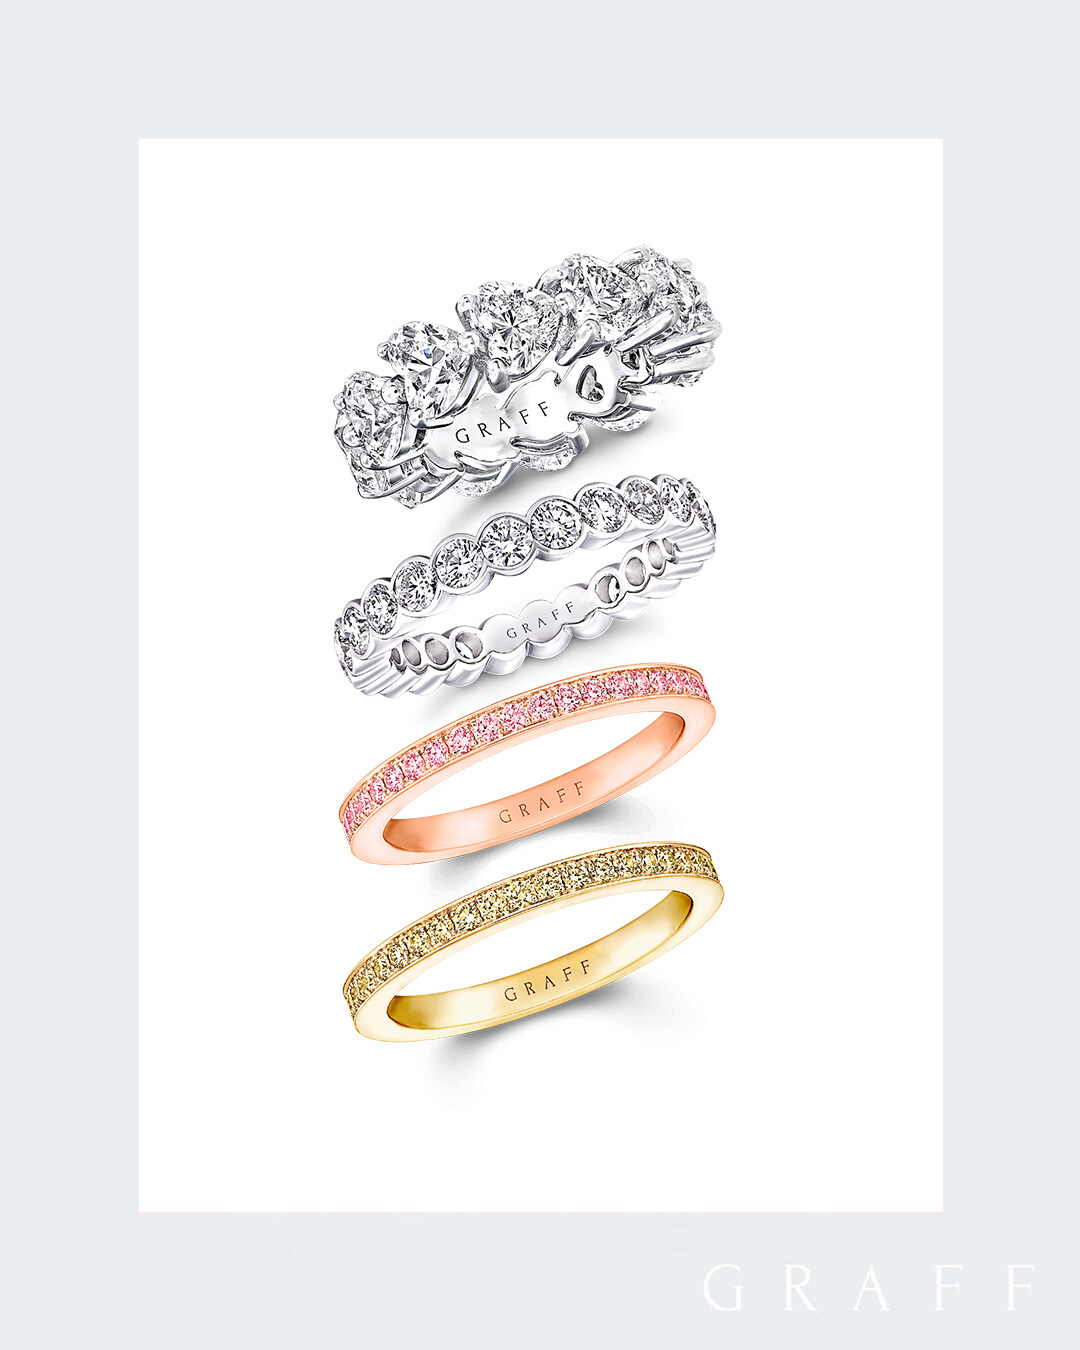 Eternity Ring另備有密鑲的圓形戒指，鑲嵌粉紅鑽/ 黃鑽 /白鑽款式，實在令人愛不釋